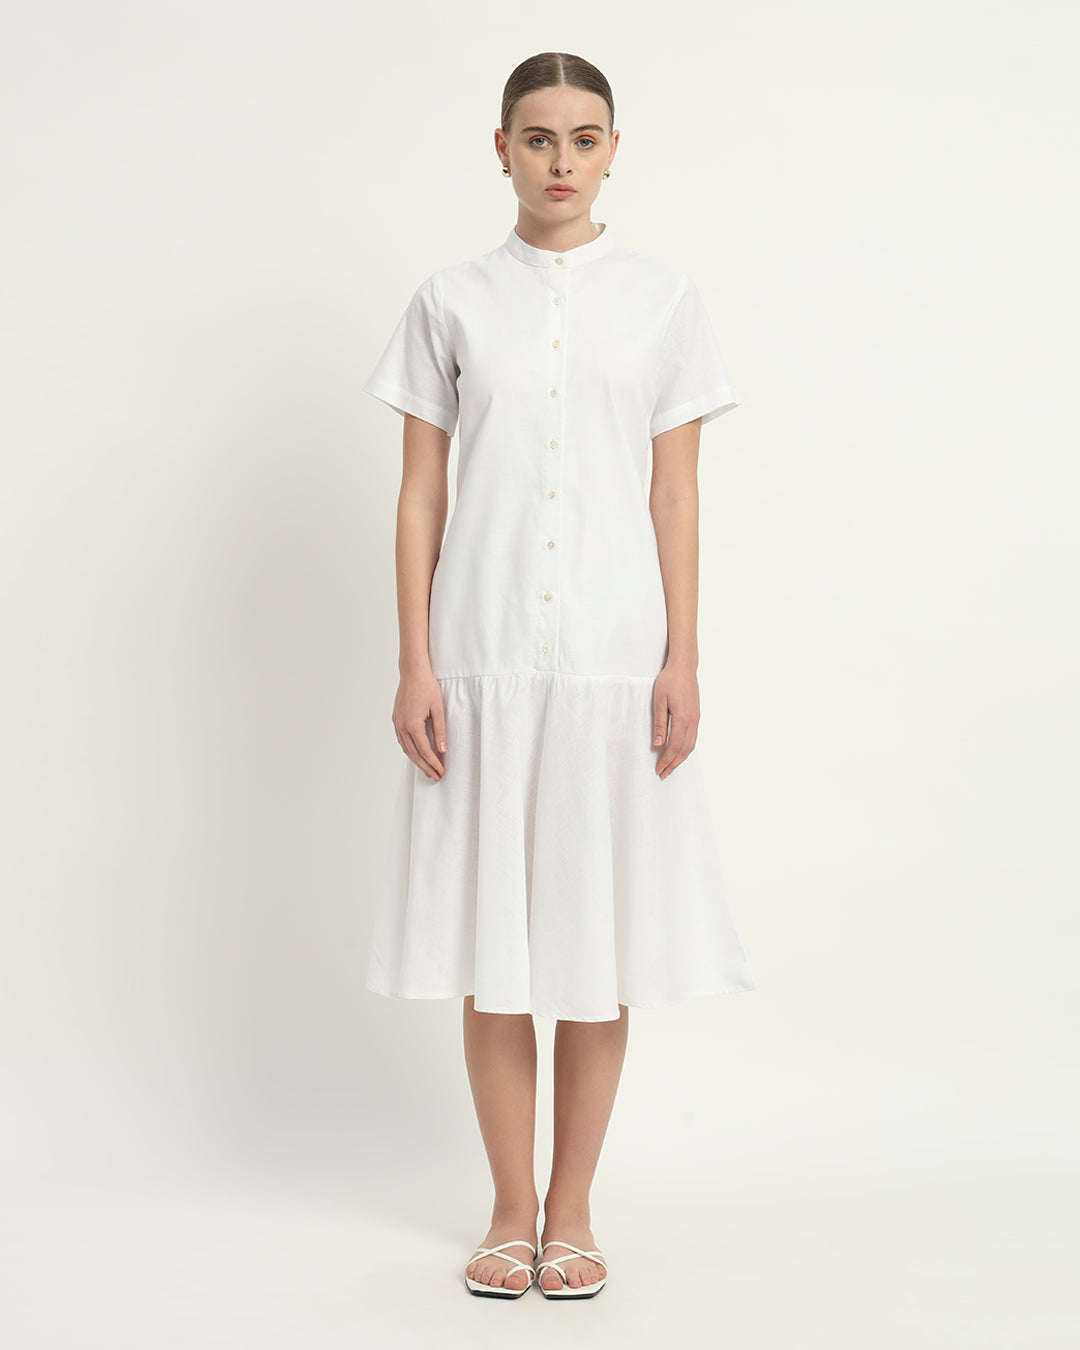 Daisy White Melrose Linen Dress